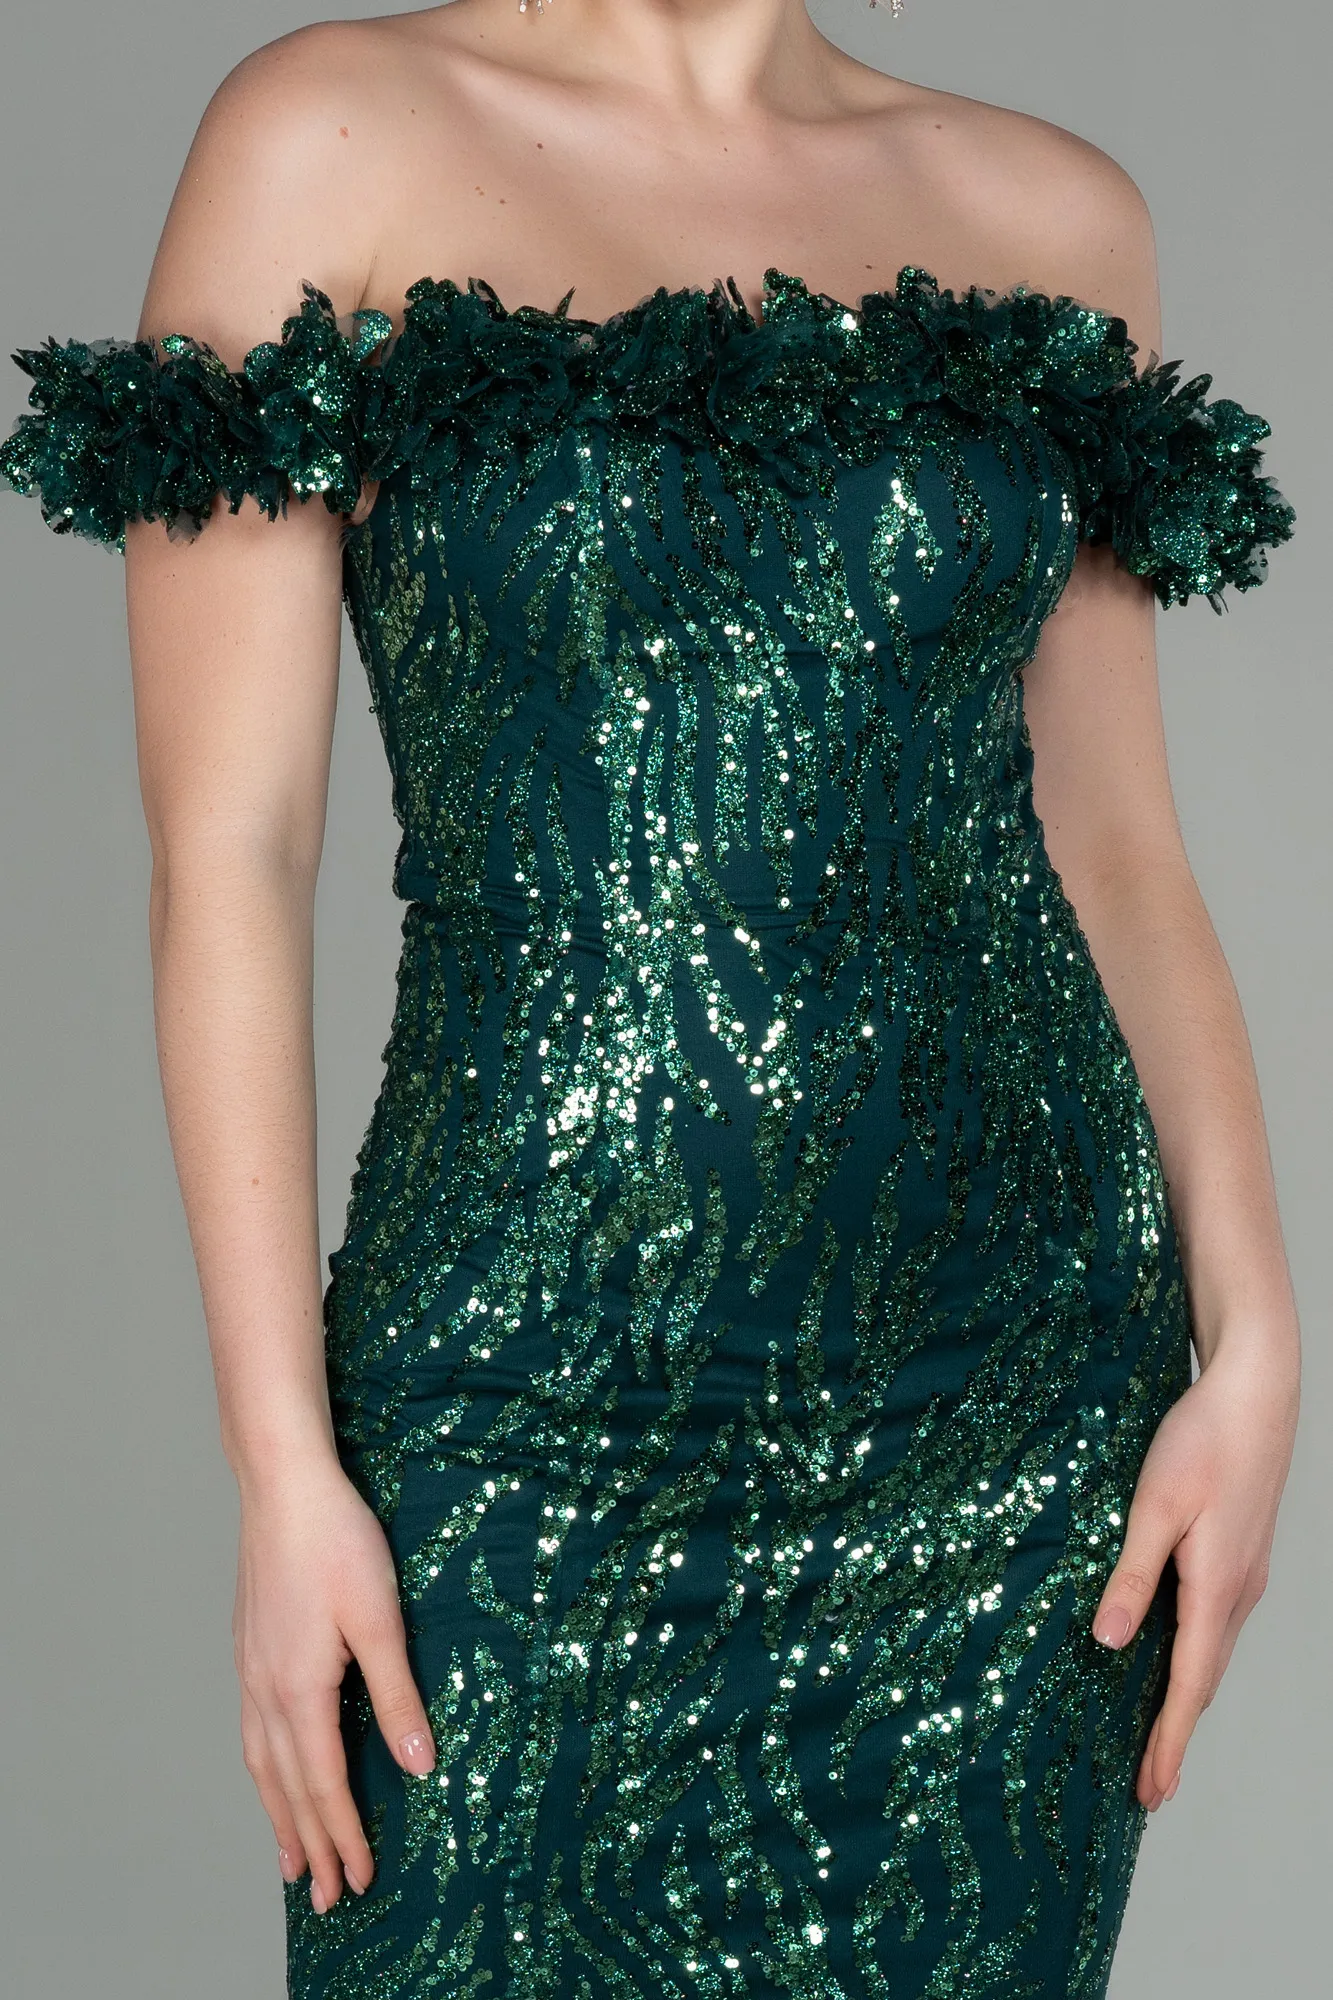 Emerald Green-Long Evening Dress ABU2881